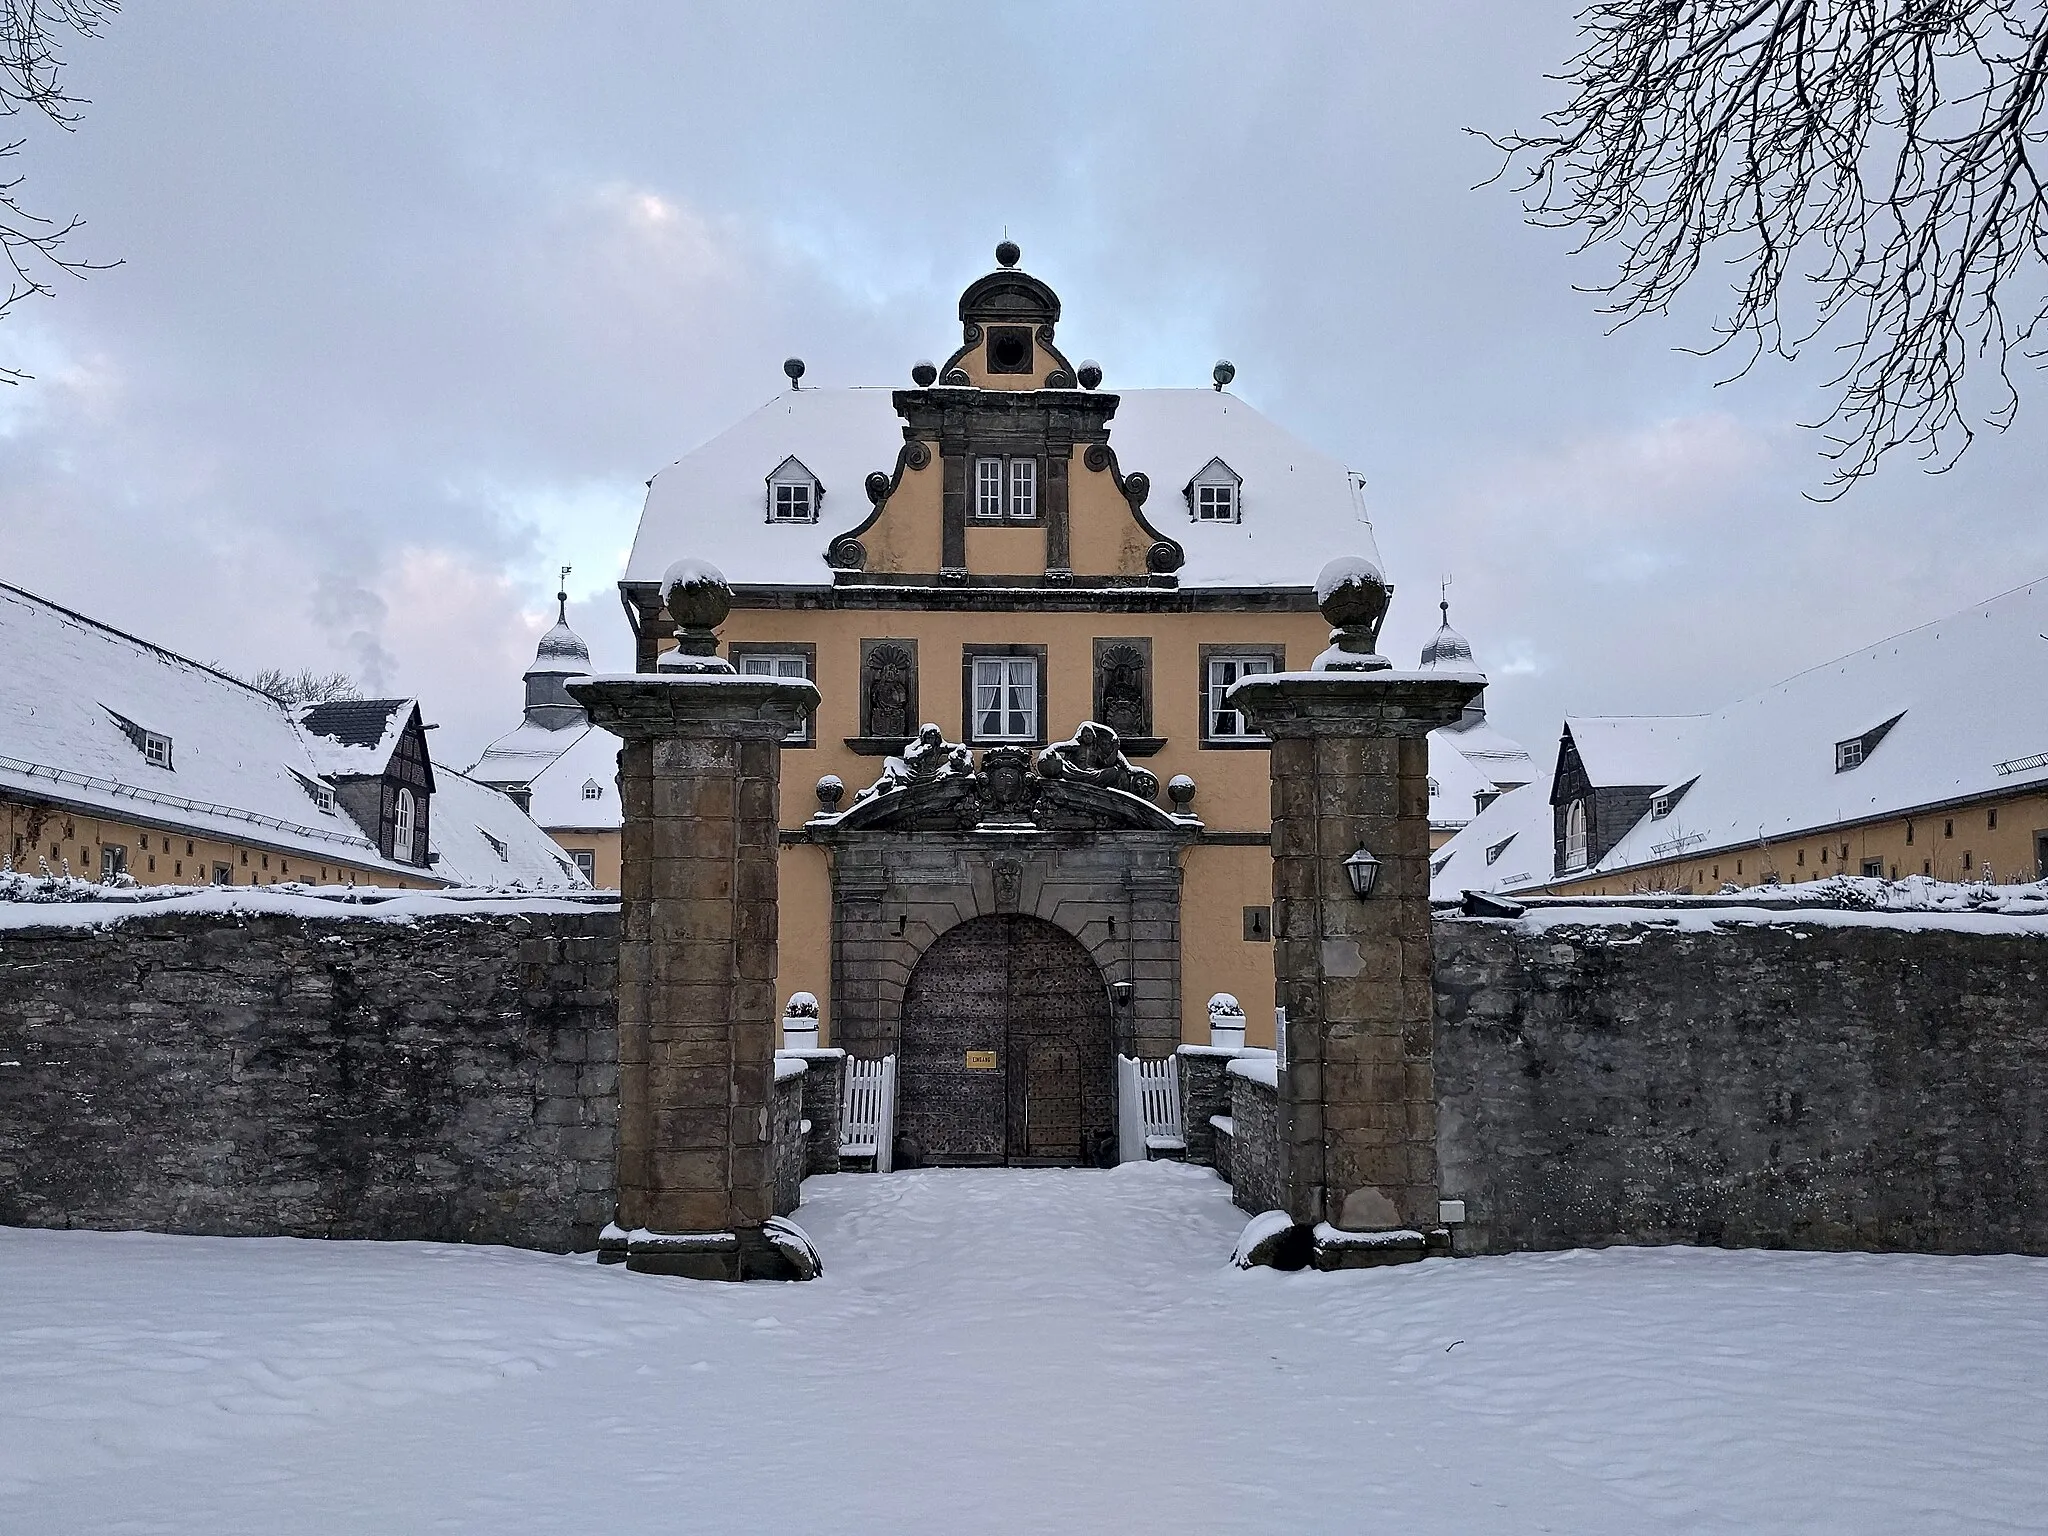 Photo showing: Schloss Eringerfeld in Geseke Eringerfeld, Kreis Soest, NRW
Steinhauser Str. 7
Denkmalnummer 65

51.587706,8.469419